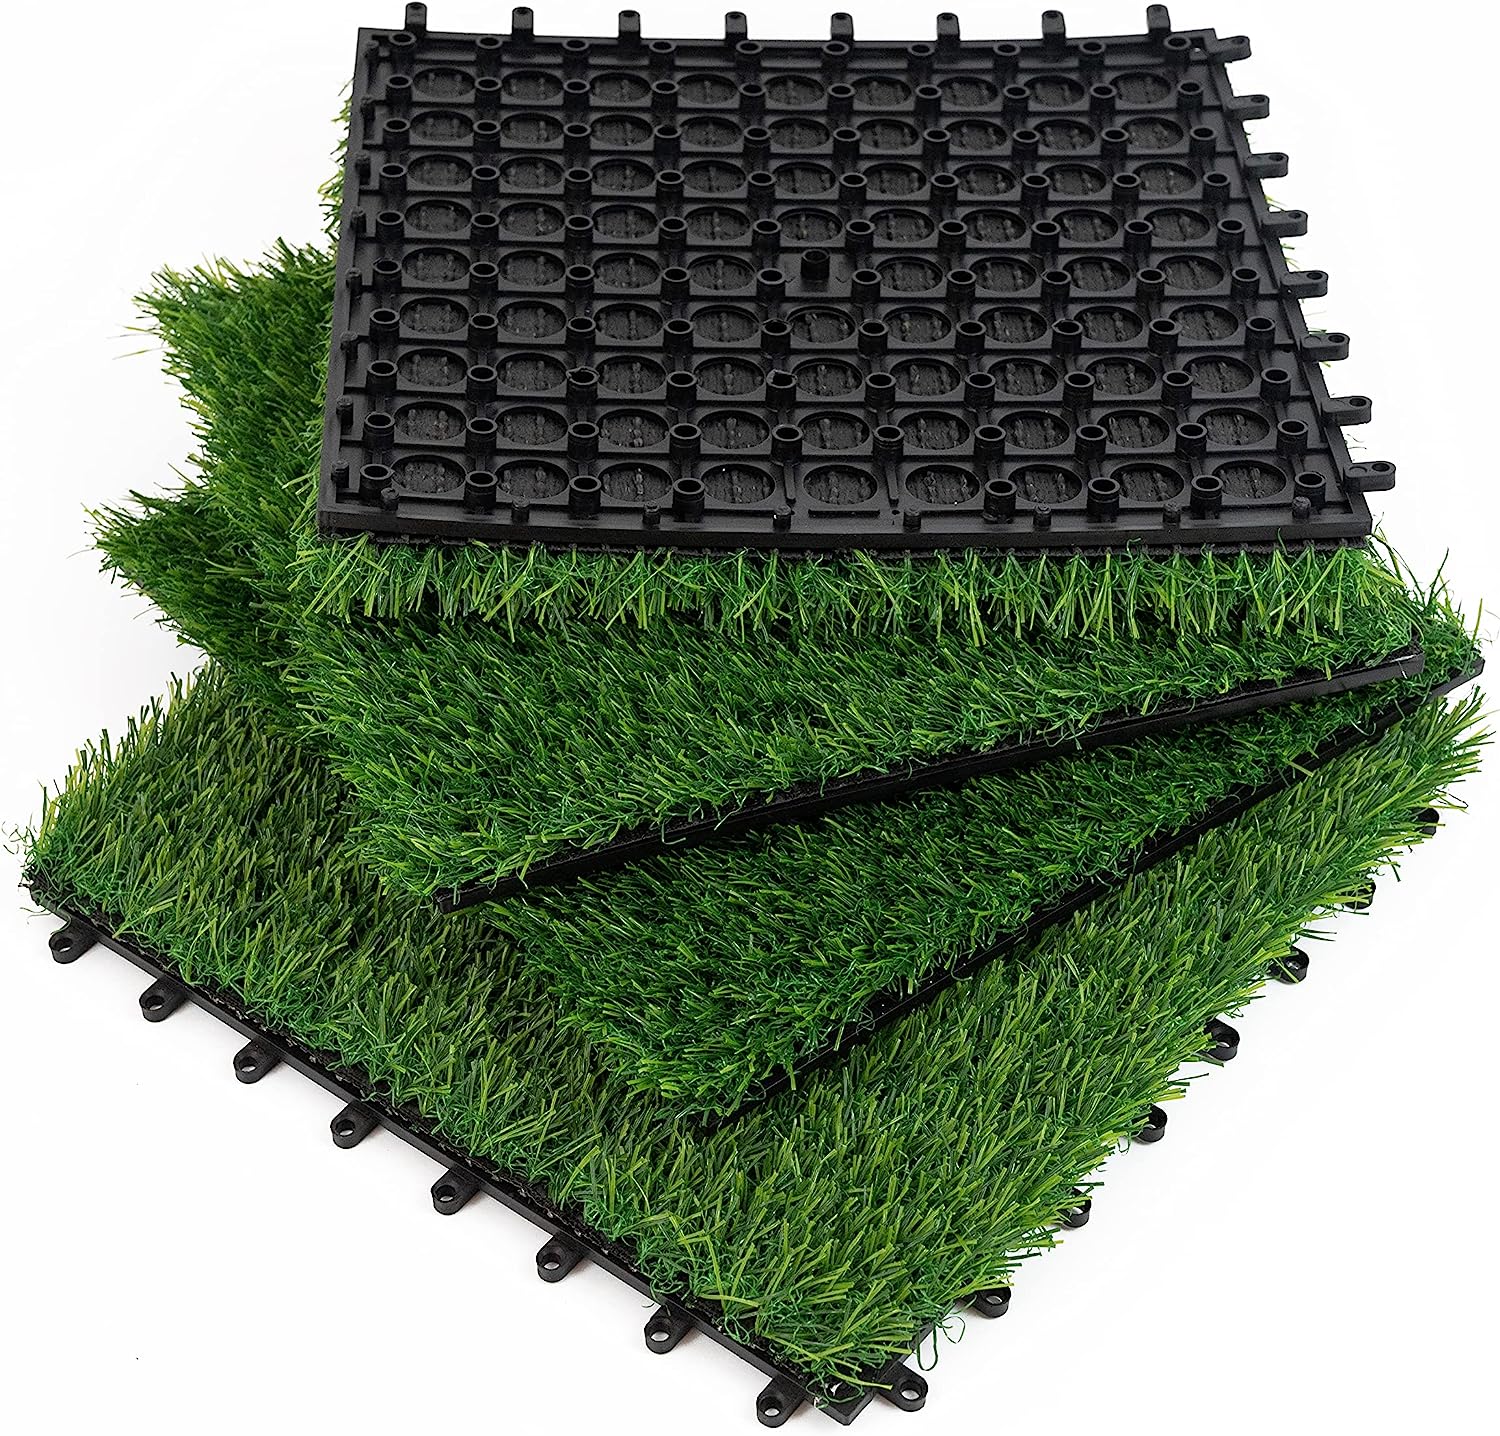 PBQWXES Artificial Grass 4 Packs 12